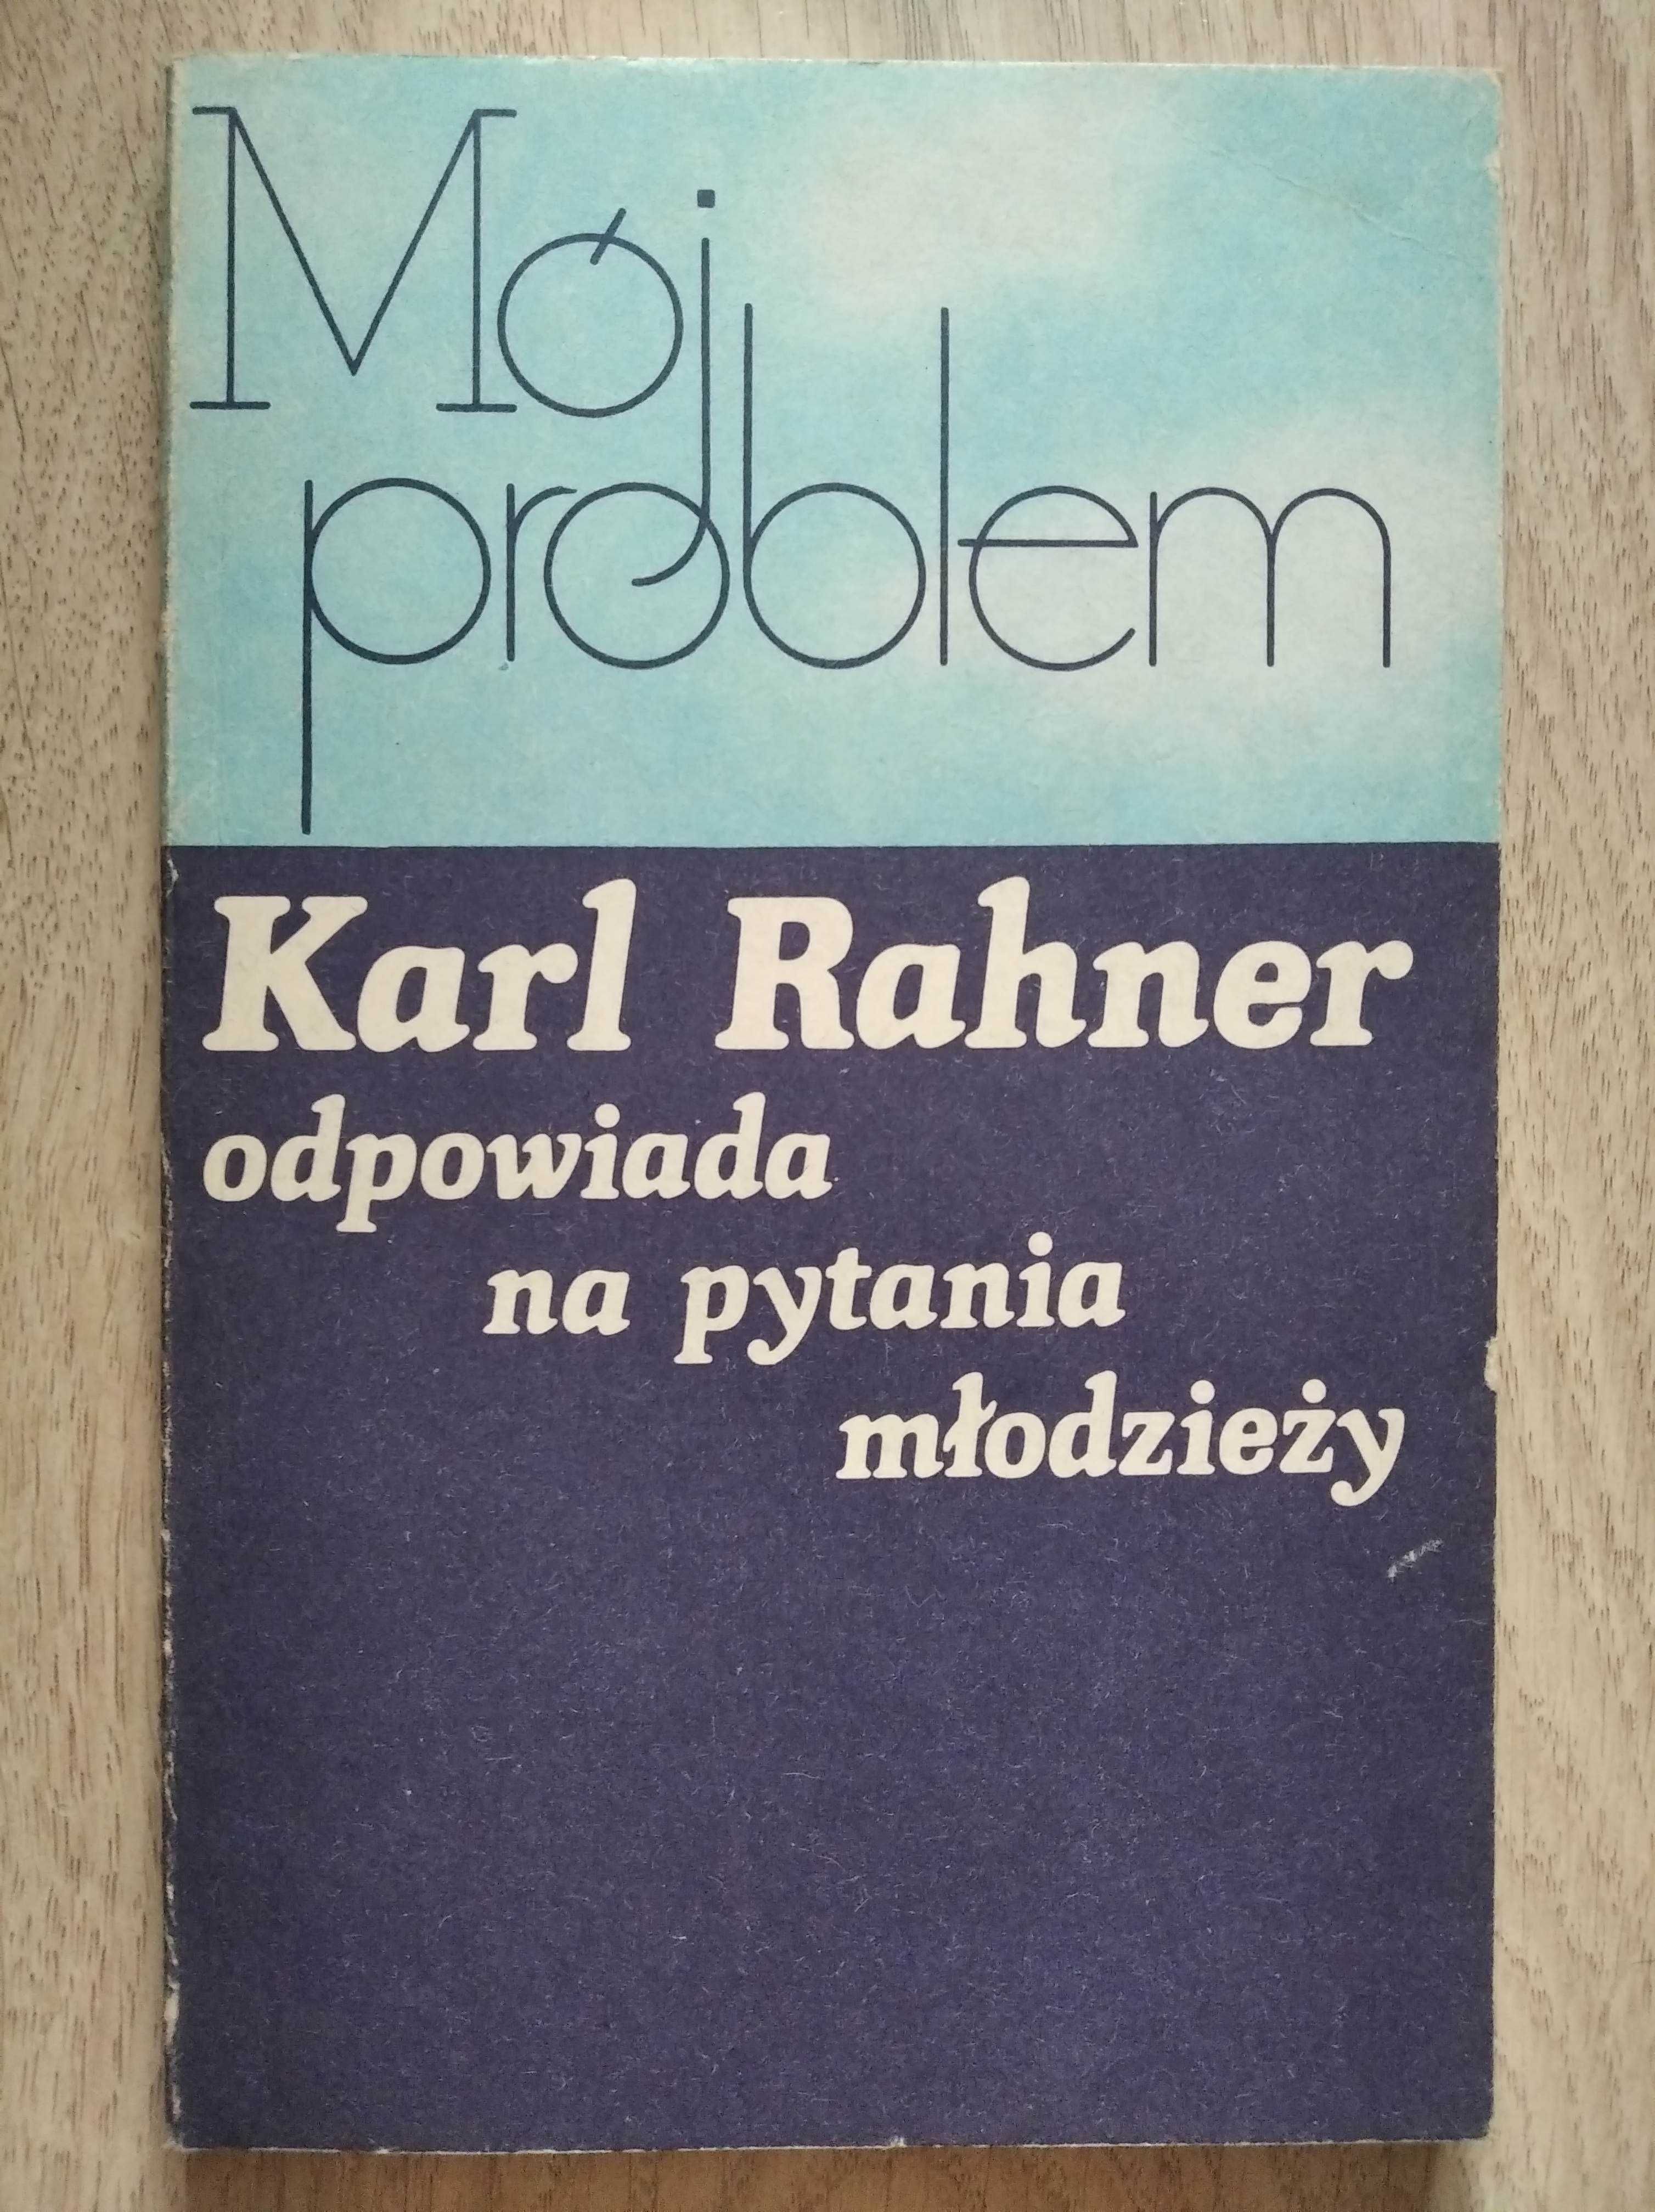 Karl Rahner odpowiada na pytania młodzieży Mój problem